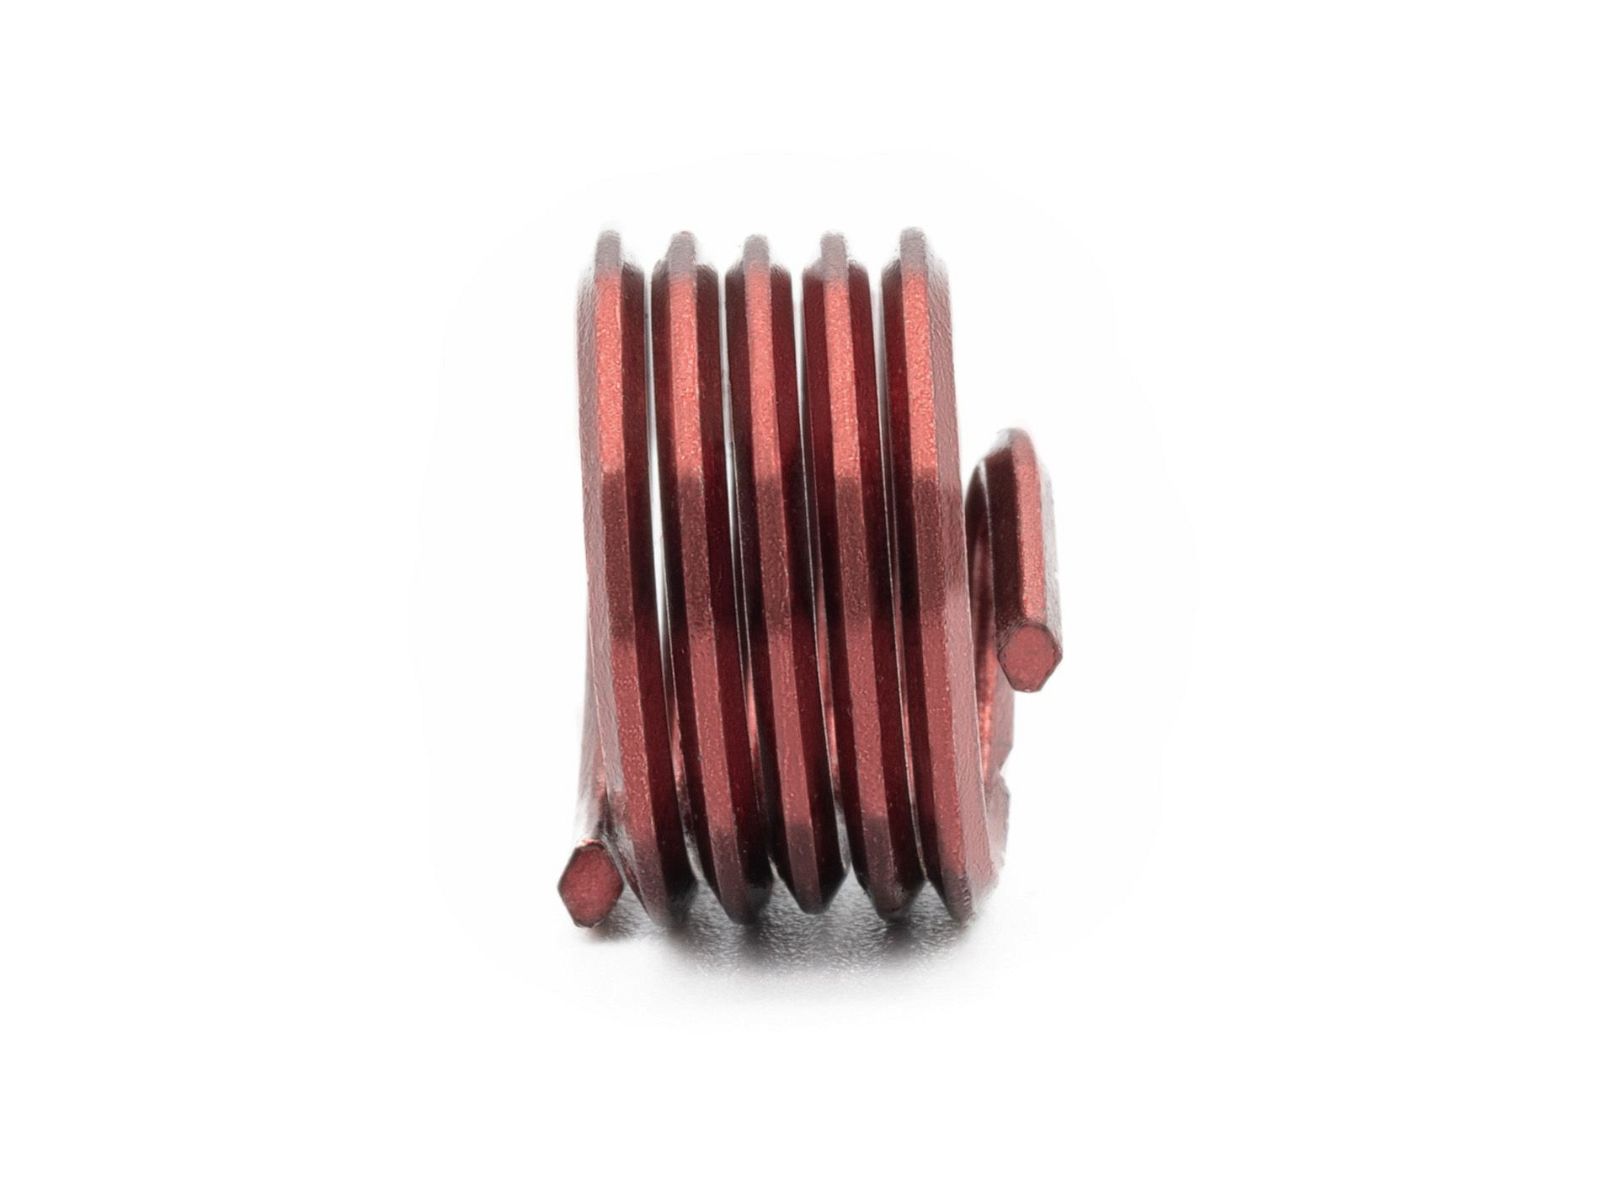 BaerCoil Wire Thread Inserts M 4 x 0.7 - 1.0 D (4 mm) - screw grip (screw locking) - 10 pcs.